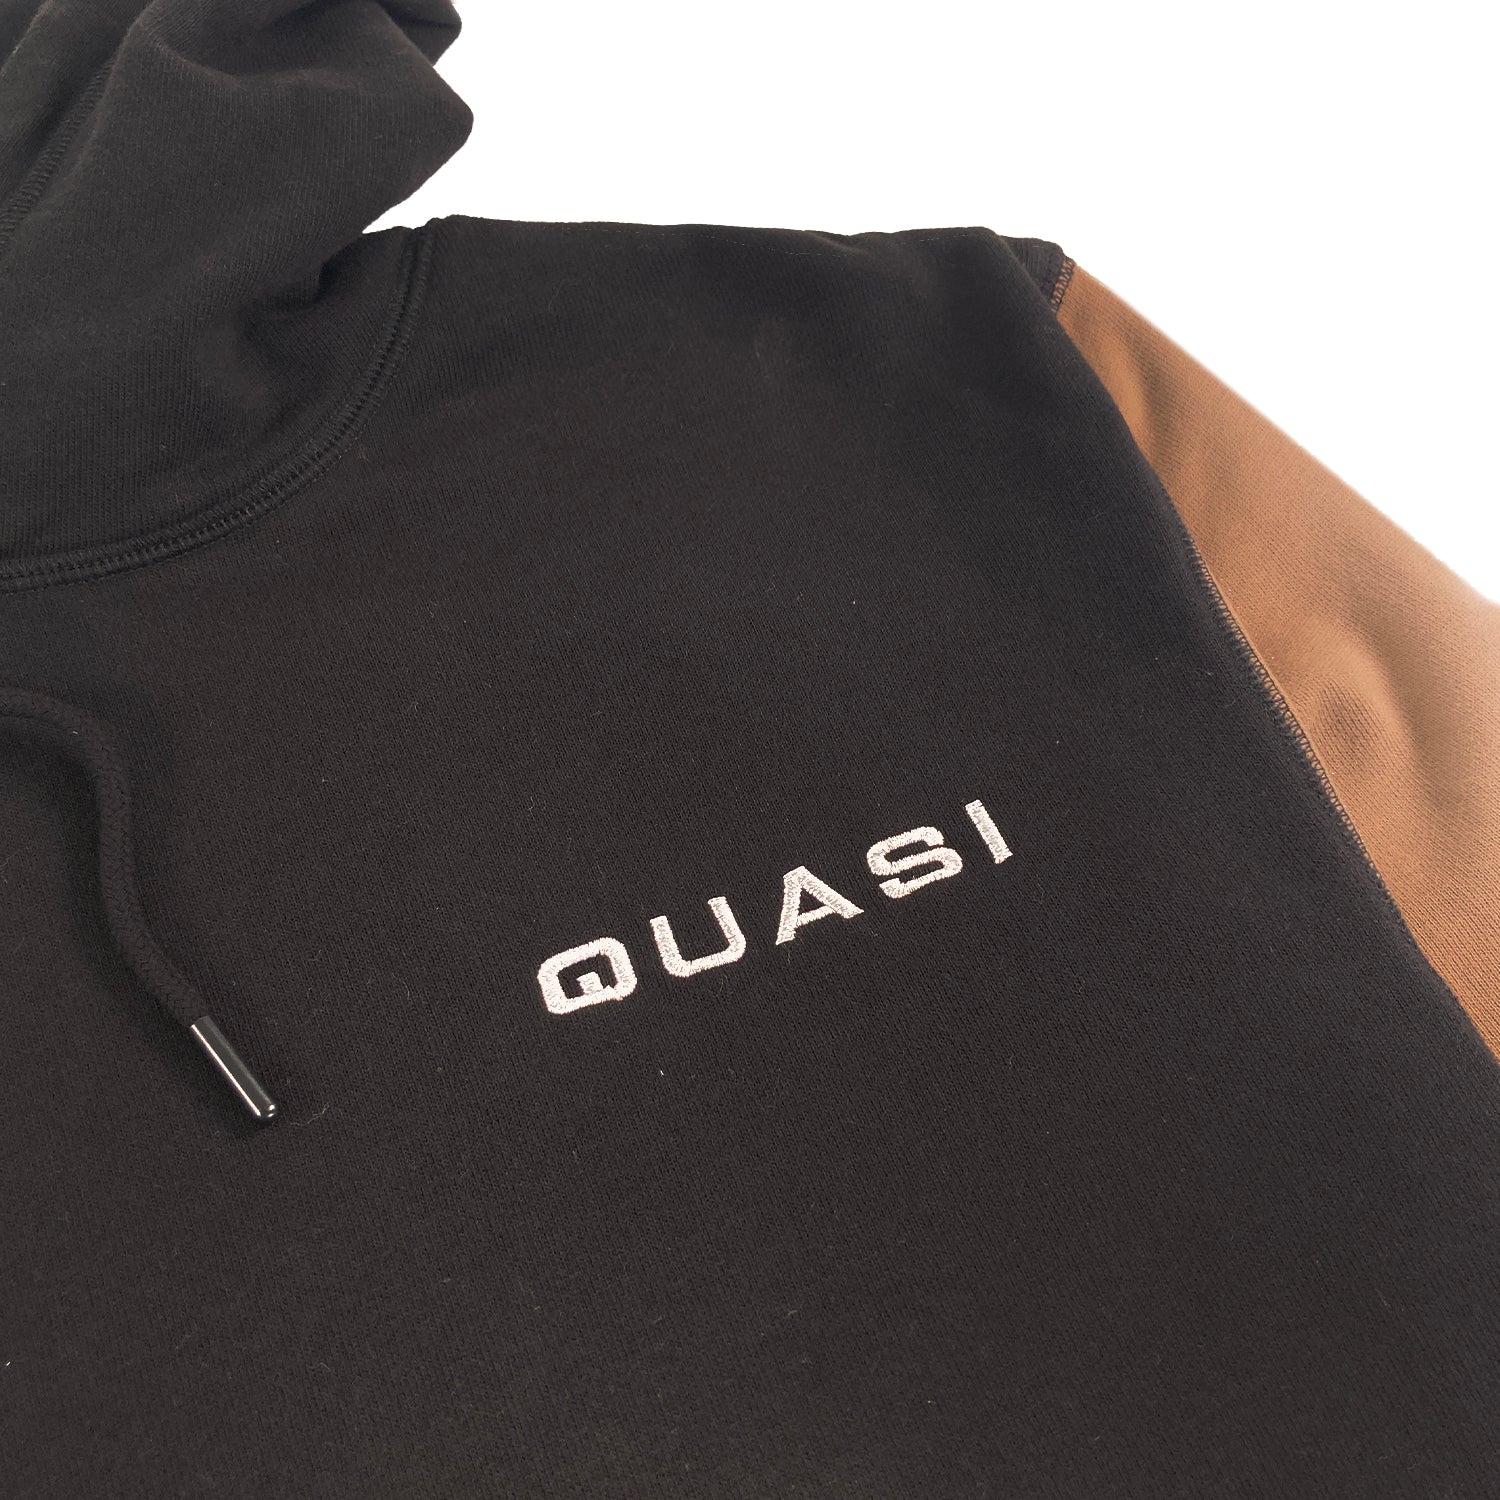 Quasi Blockhead Hooded Sweat  - Black / Taupe - Prime Delux Store